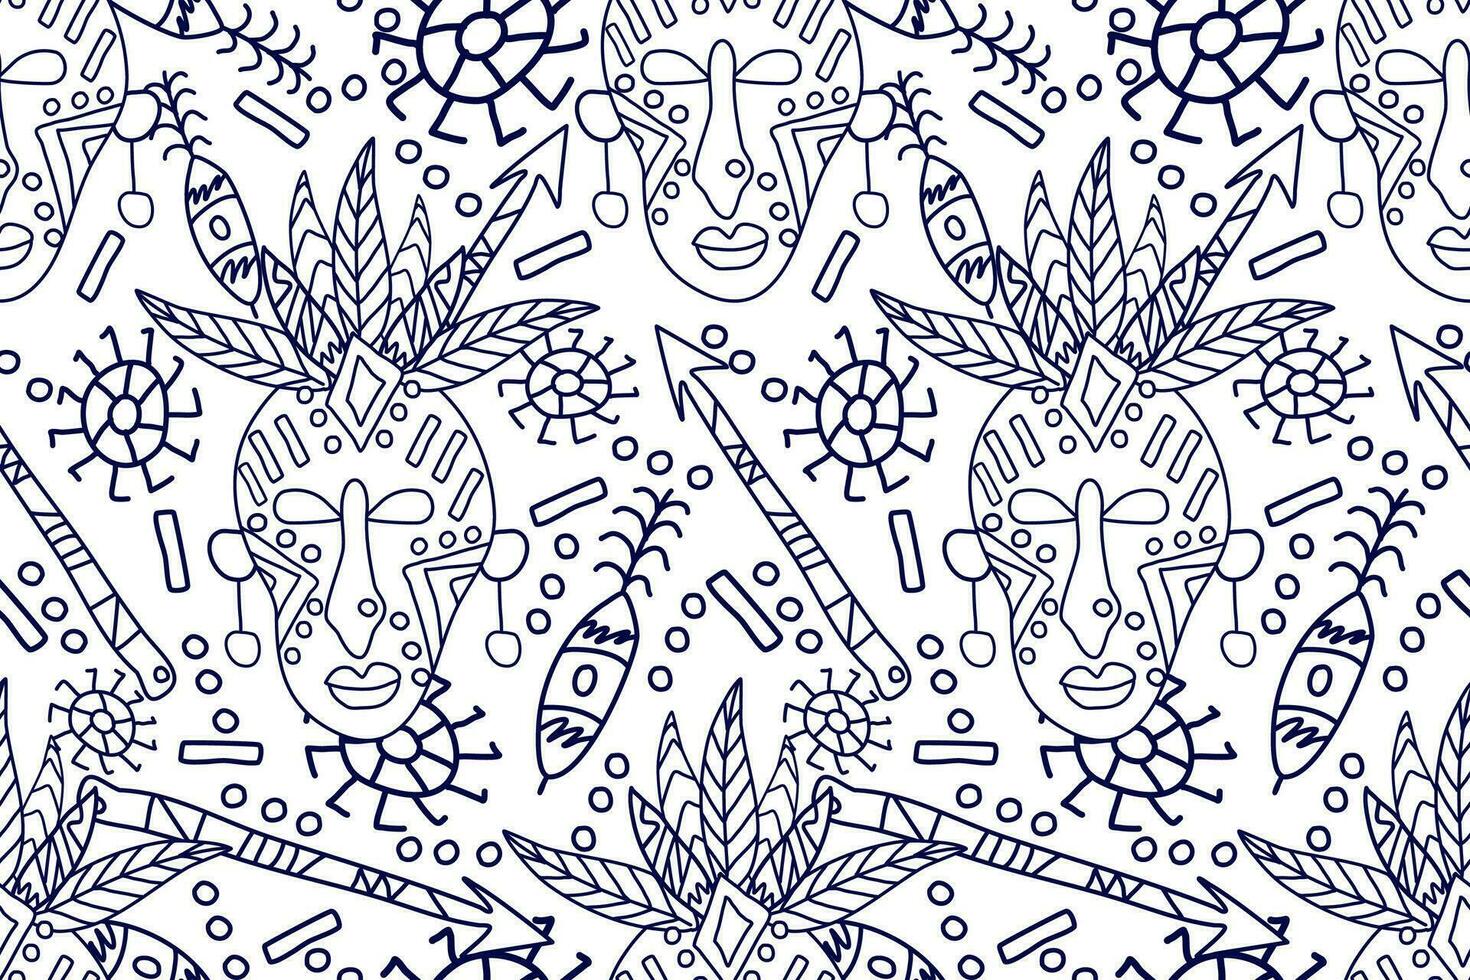 africano sin costura patrón.azul y blanco fondo.azteca estilo resumen vector ilustración.diseño para textura, tela, ropa, envoltura, decoración.africana garabatear Arte modelo.